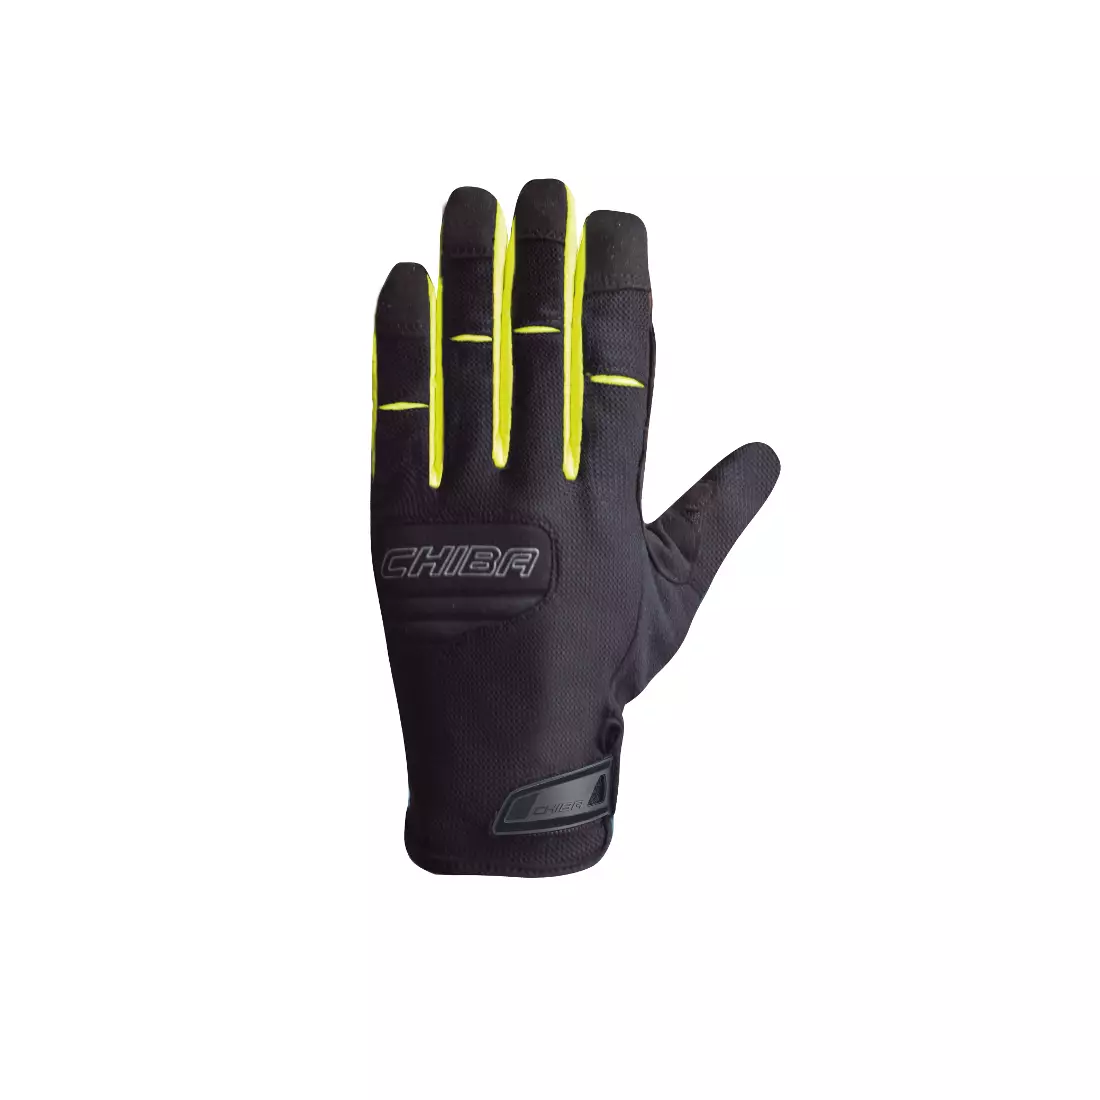 CHIBA TITAN letní dlouhé prstové cyklistické rukavice, černá fluor žlutá 30786